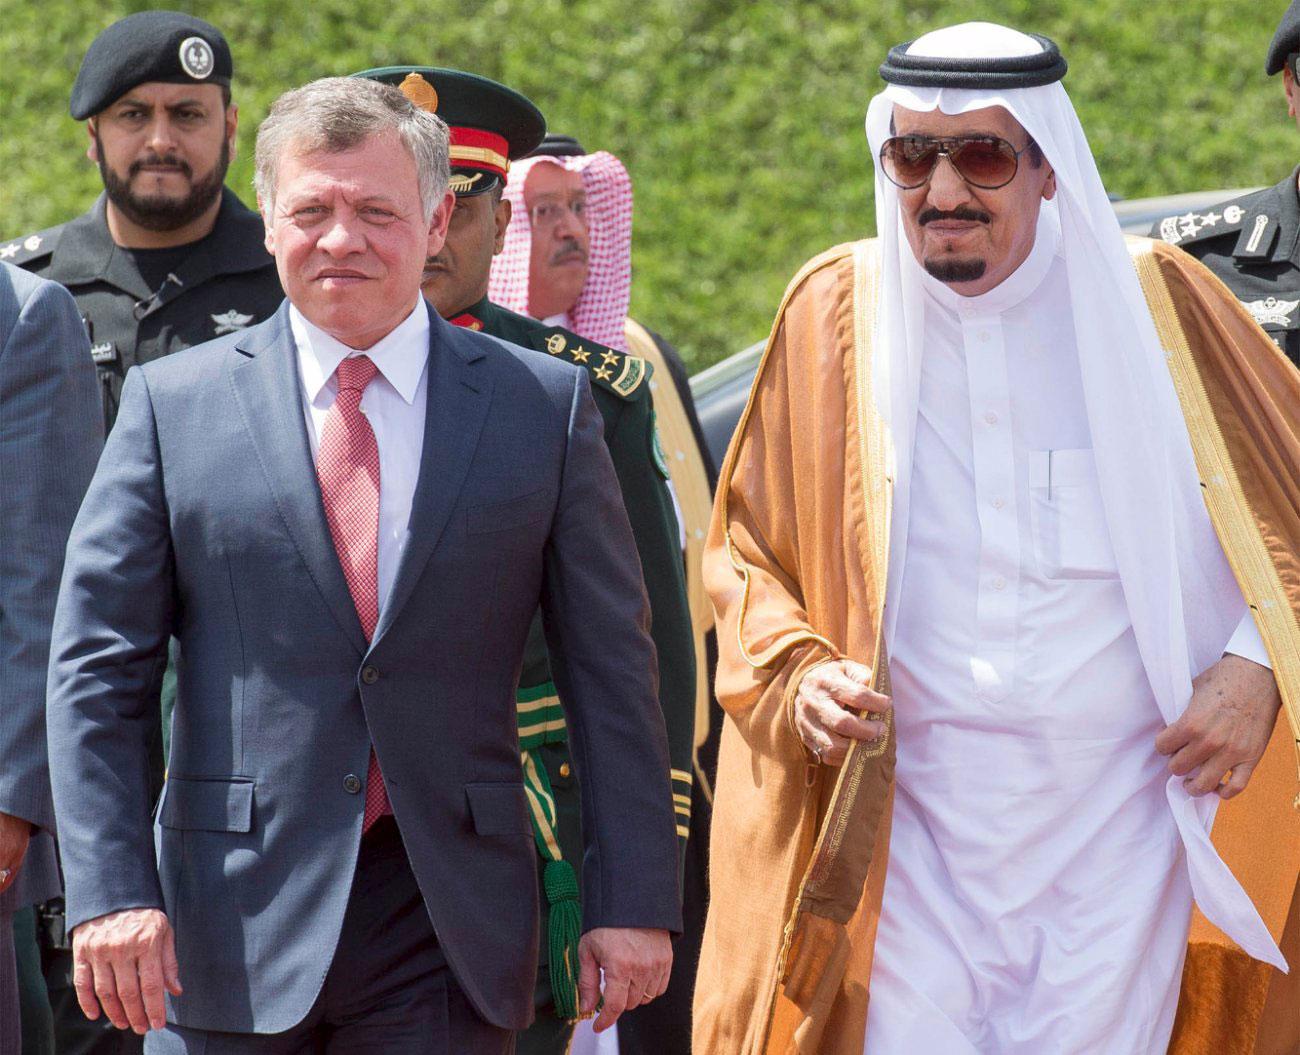  العاهل الأردني الملك عبدالله الثاني يستقبل العاهل السعودي الملك سلمان بن عبدالعزيز